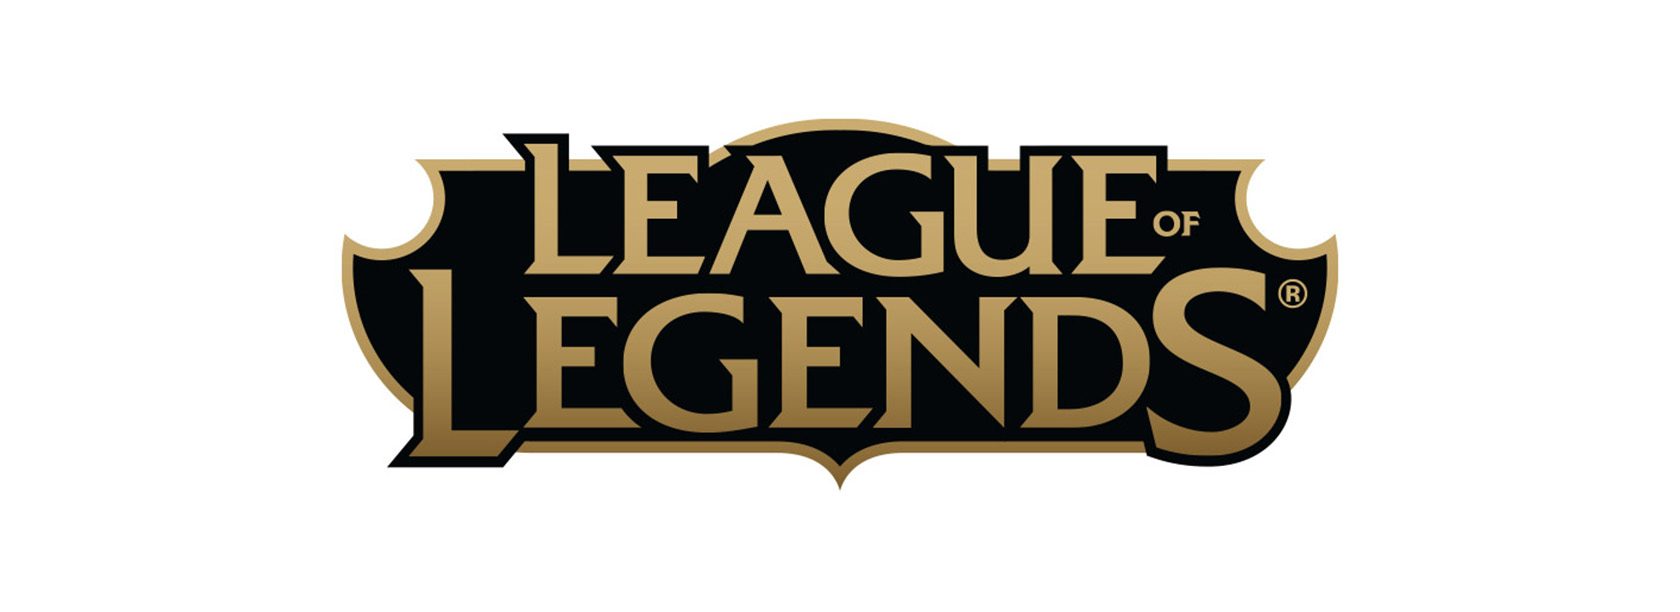 League of legends comics - Der Gewinner 